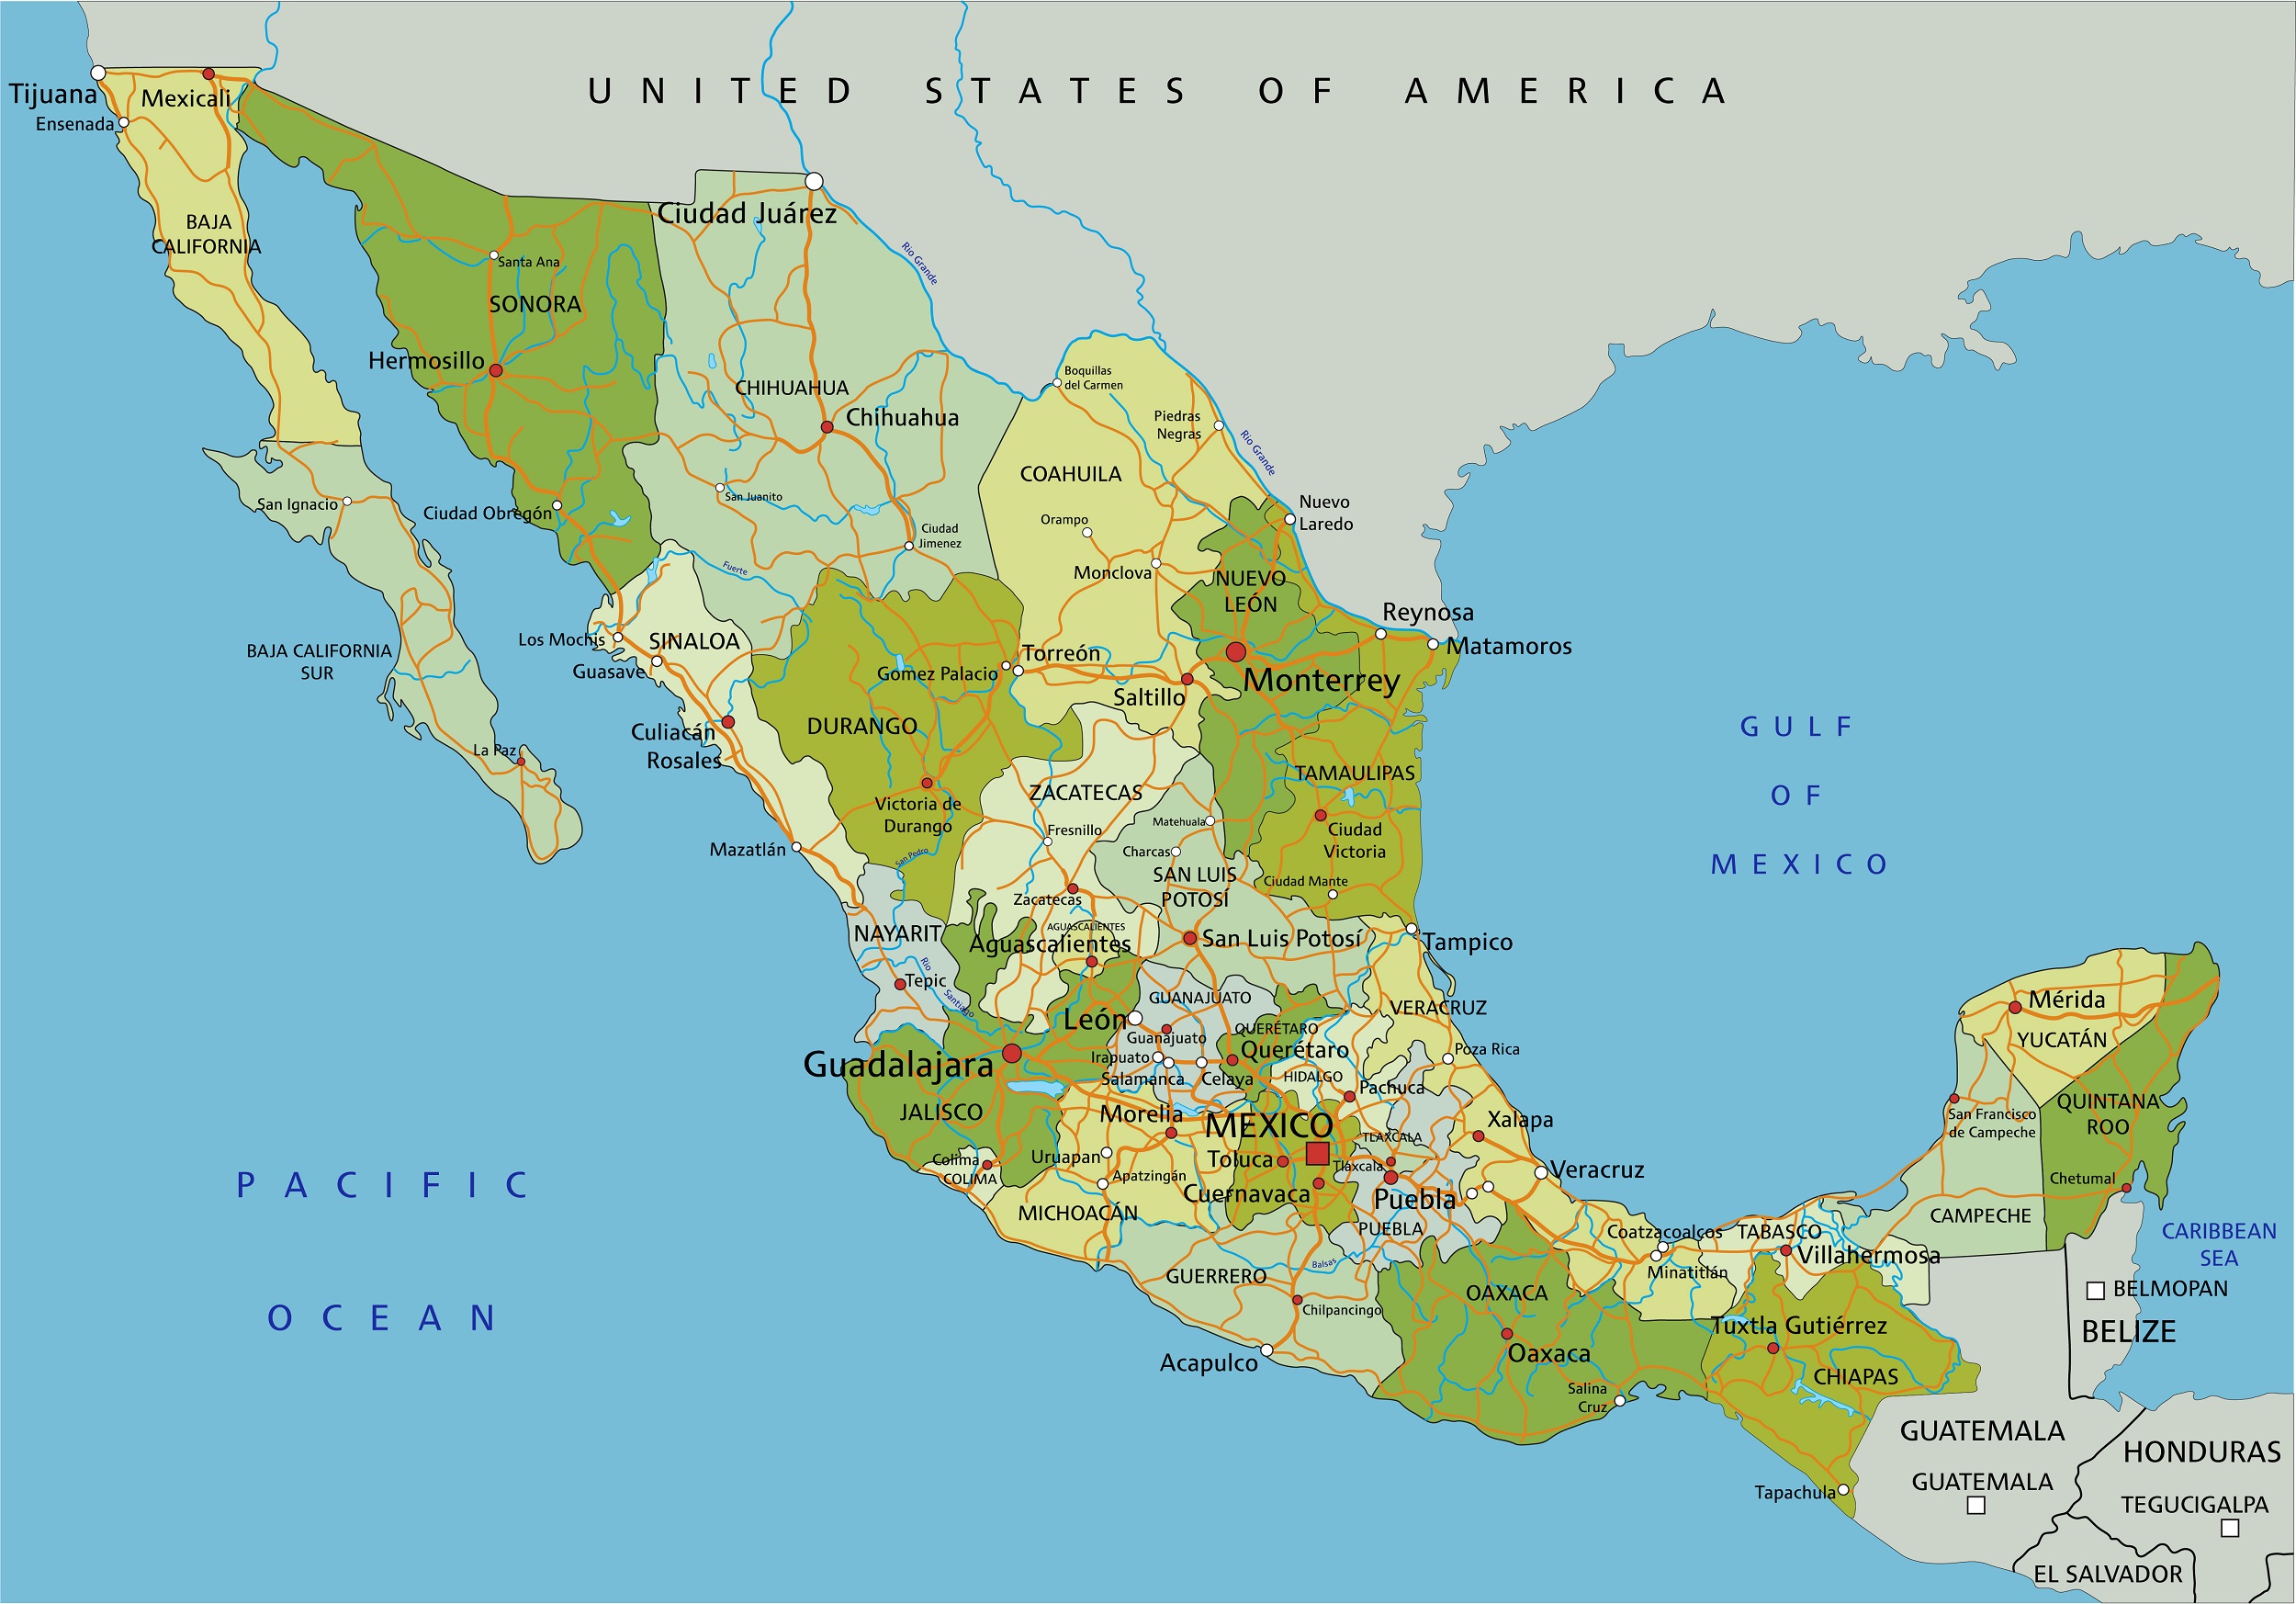 Asentar Maestr A Libro Guinness De R Cord Mundial Mapa Mexico Ciudades